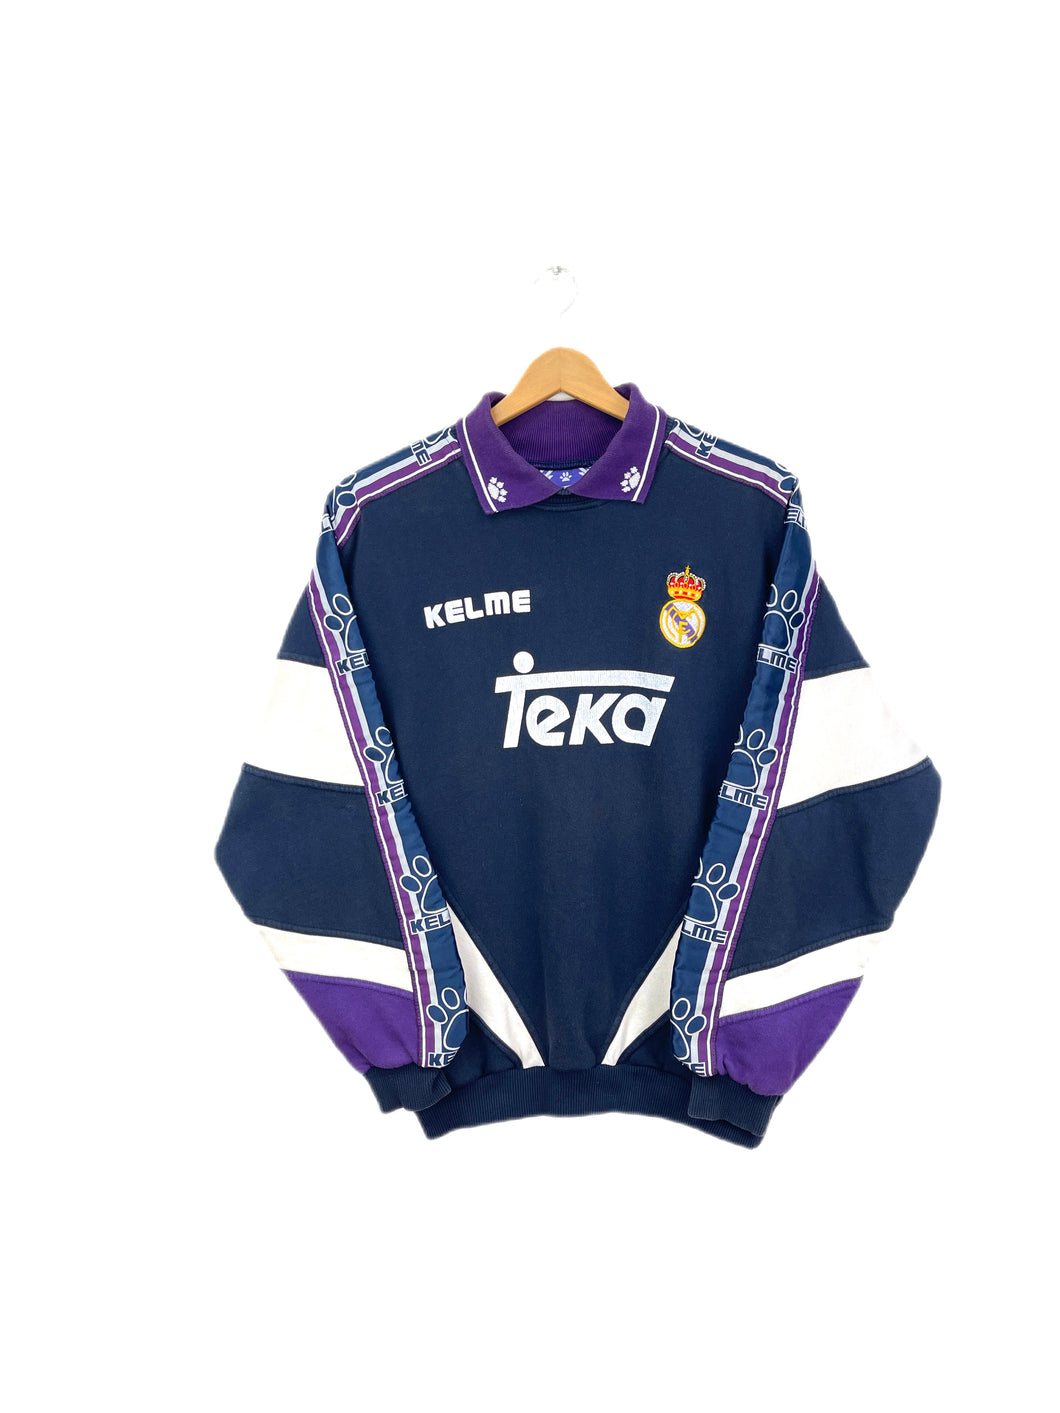 Kelme Real Madrid 1994/95 Sweatshirt - Small